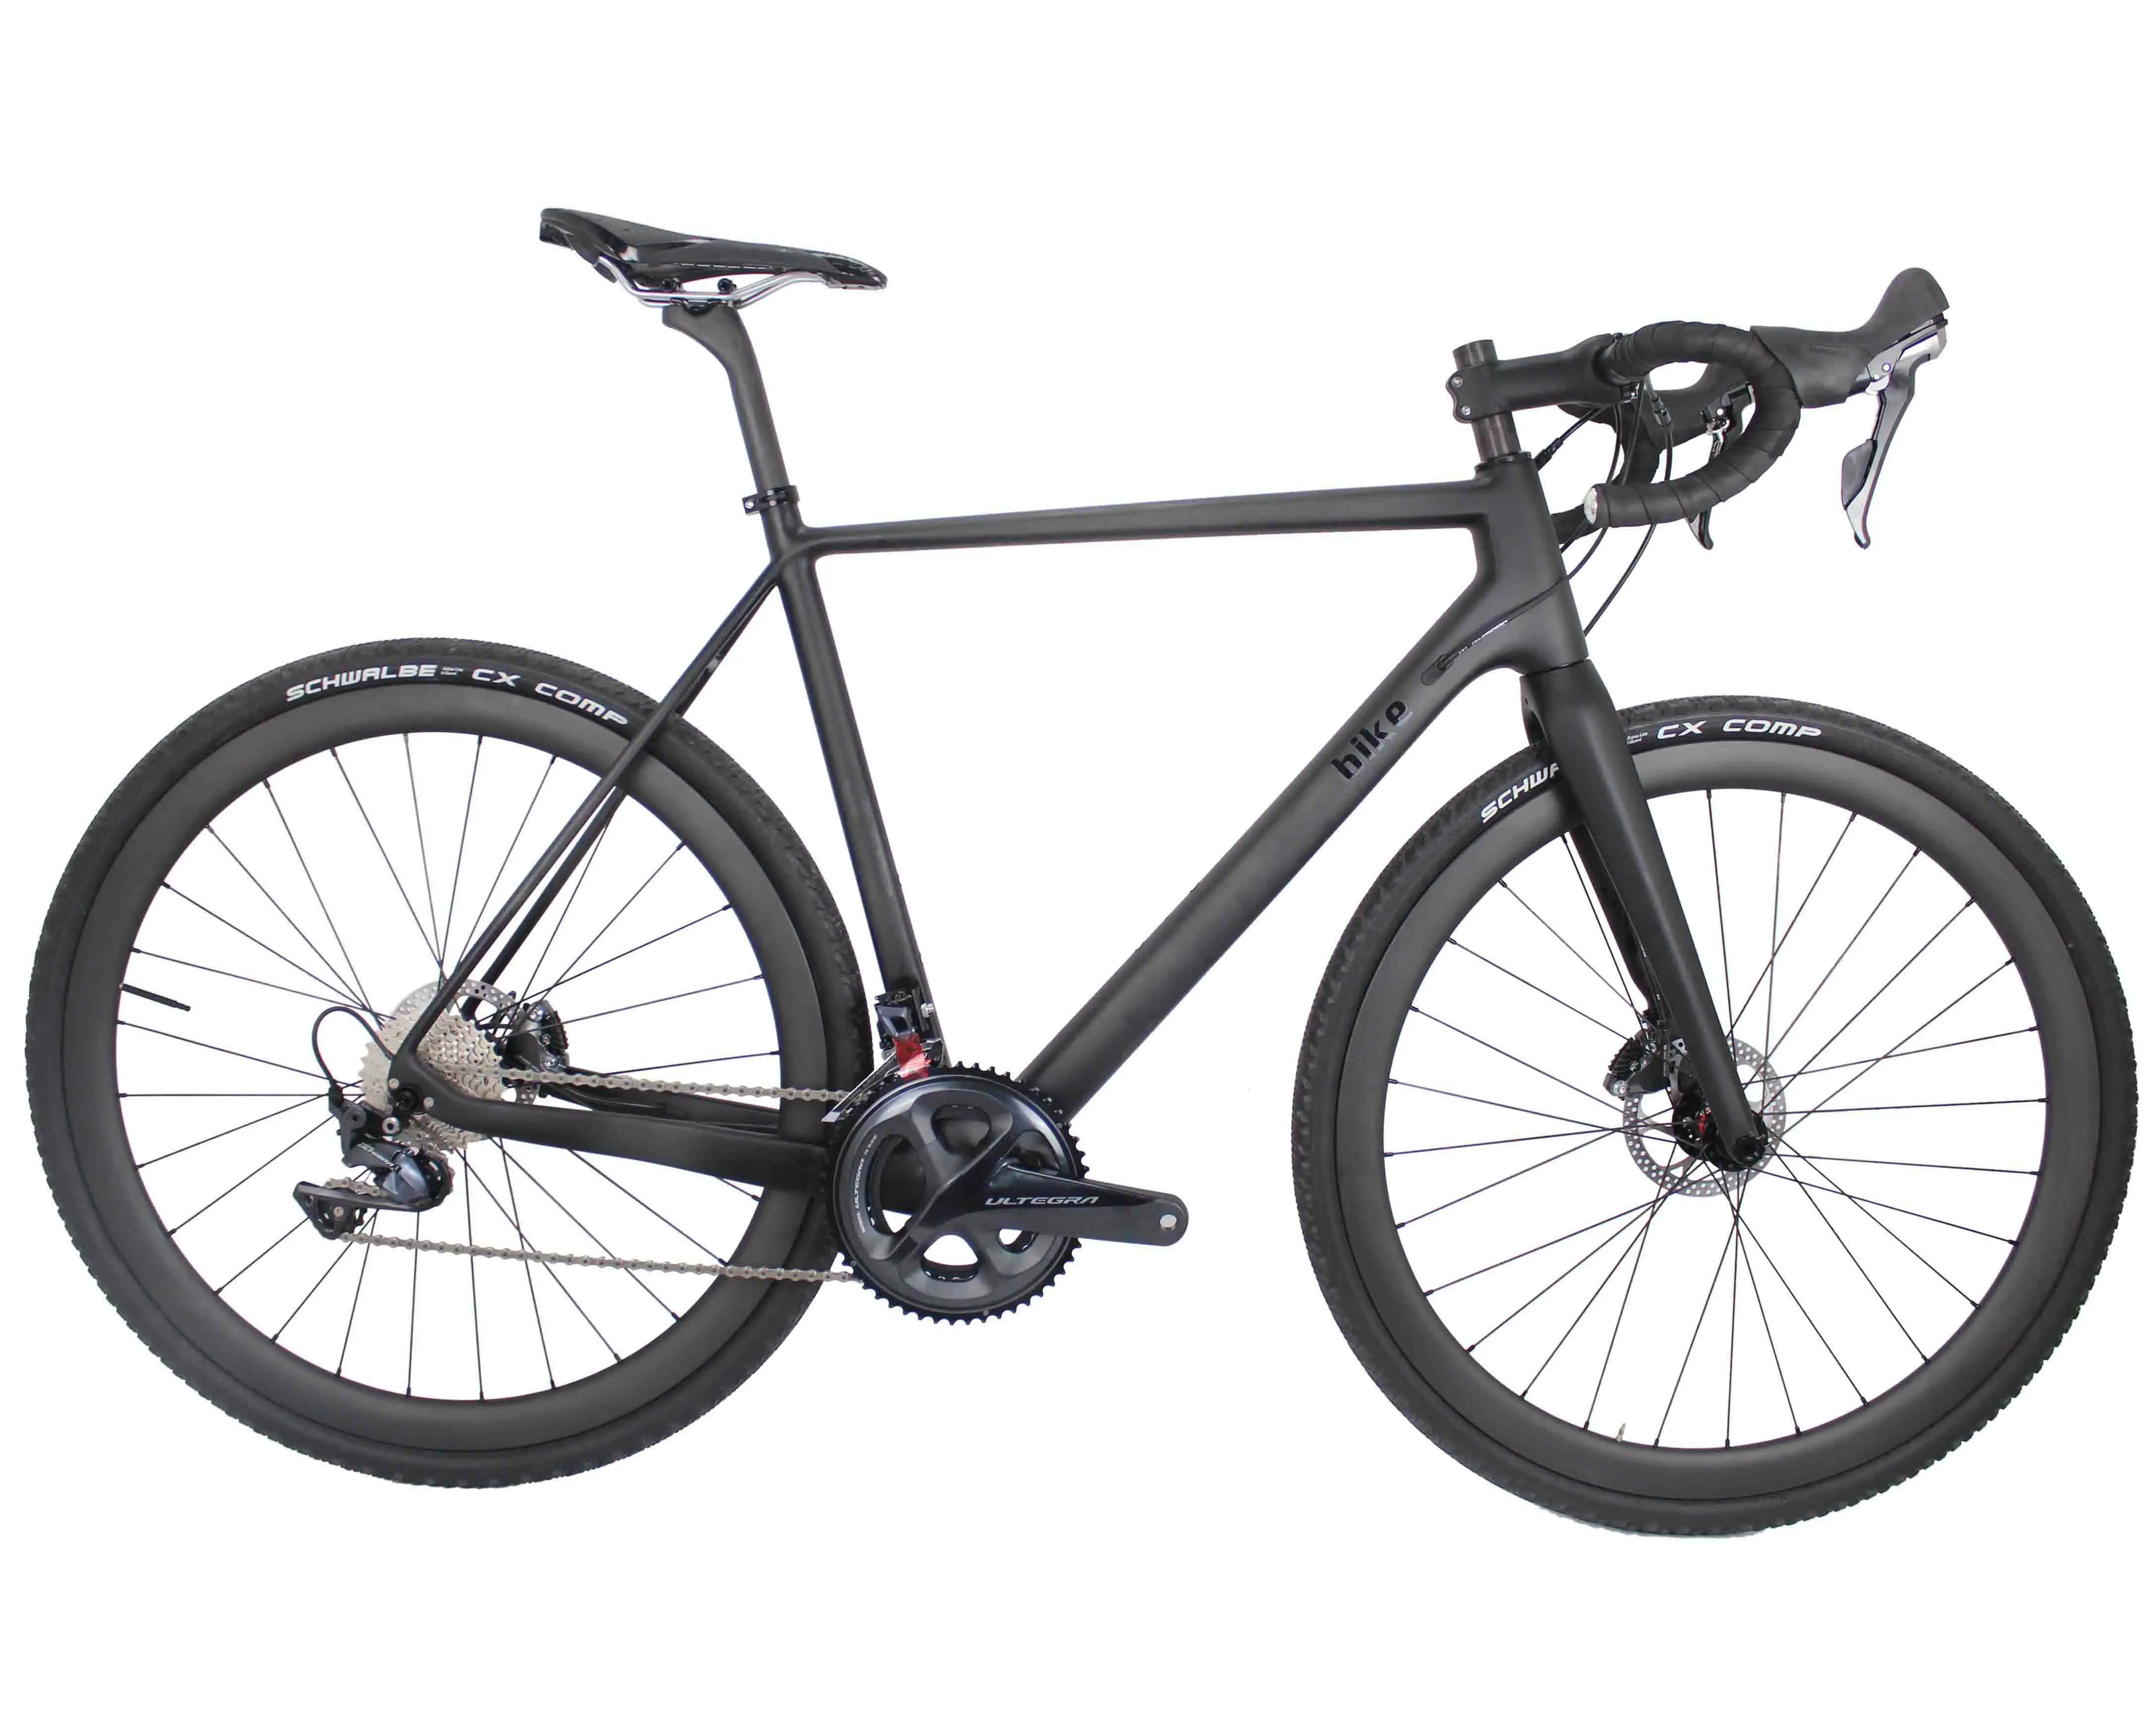 

T1000 Full carbon complete Bike,12*142mm Disc brake gravel Bike Frame with GRX 810 11S